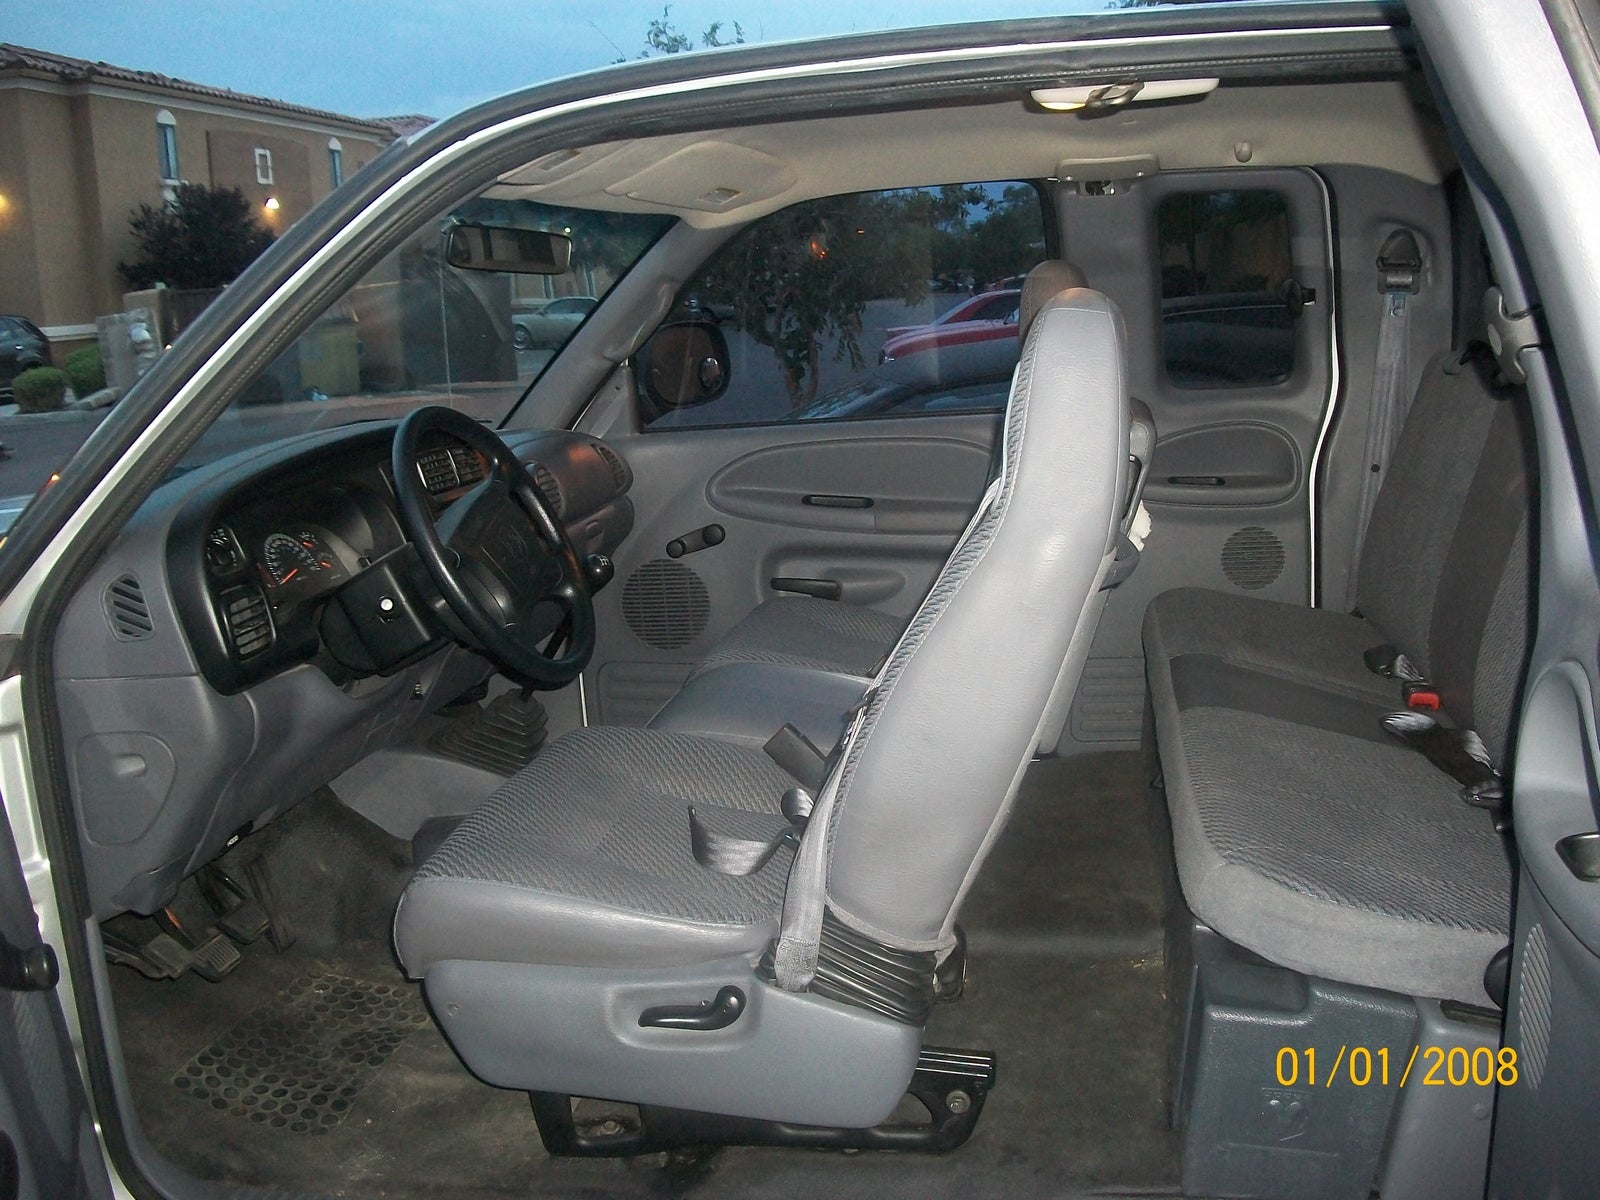 2001 Dodge Ram Pickup 1500 - Interior Pictures - CarGurus 2001 Dodge Ram 1500 Car Seat Installation